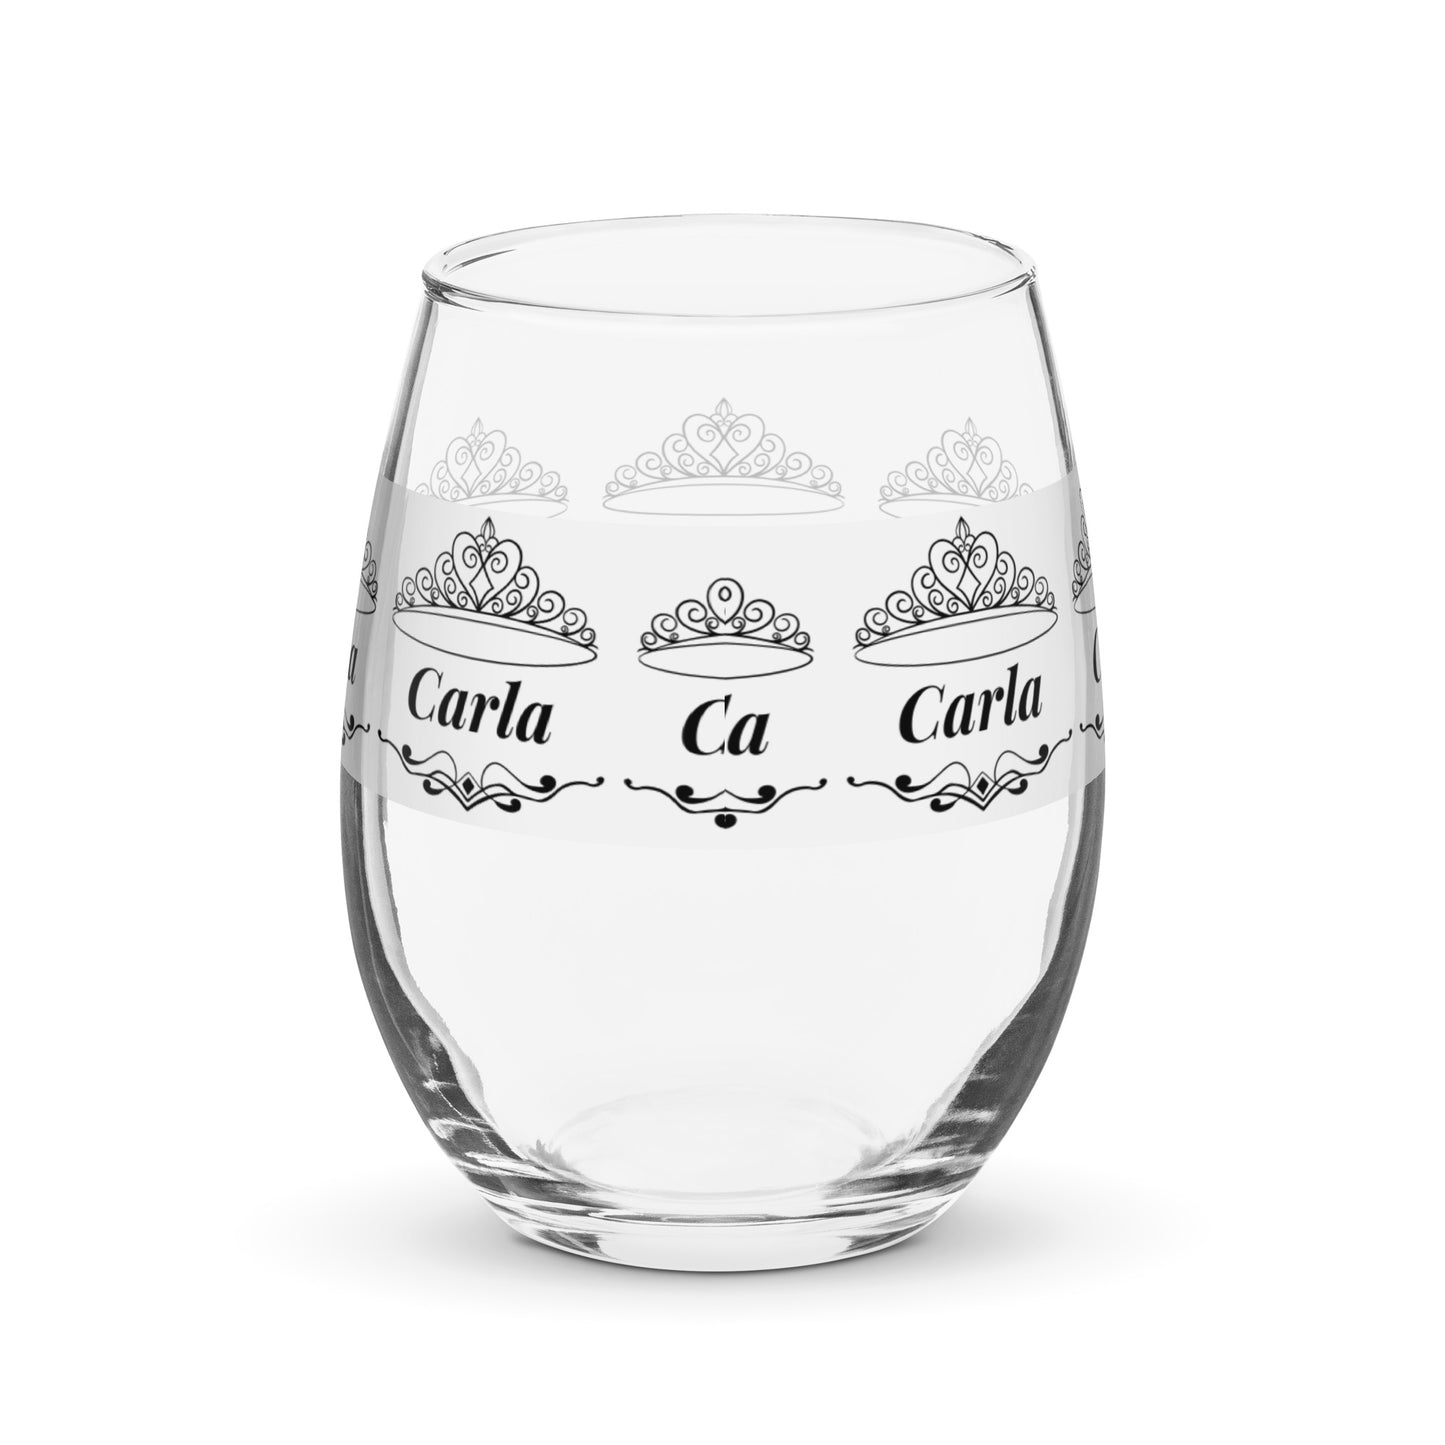 Carla nombre copa de vino copa de vino personalizada copa de vino